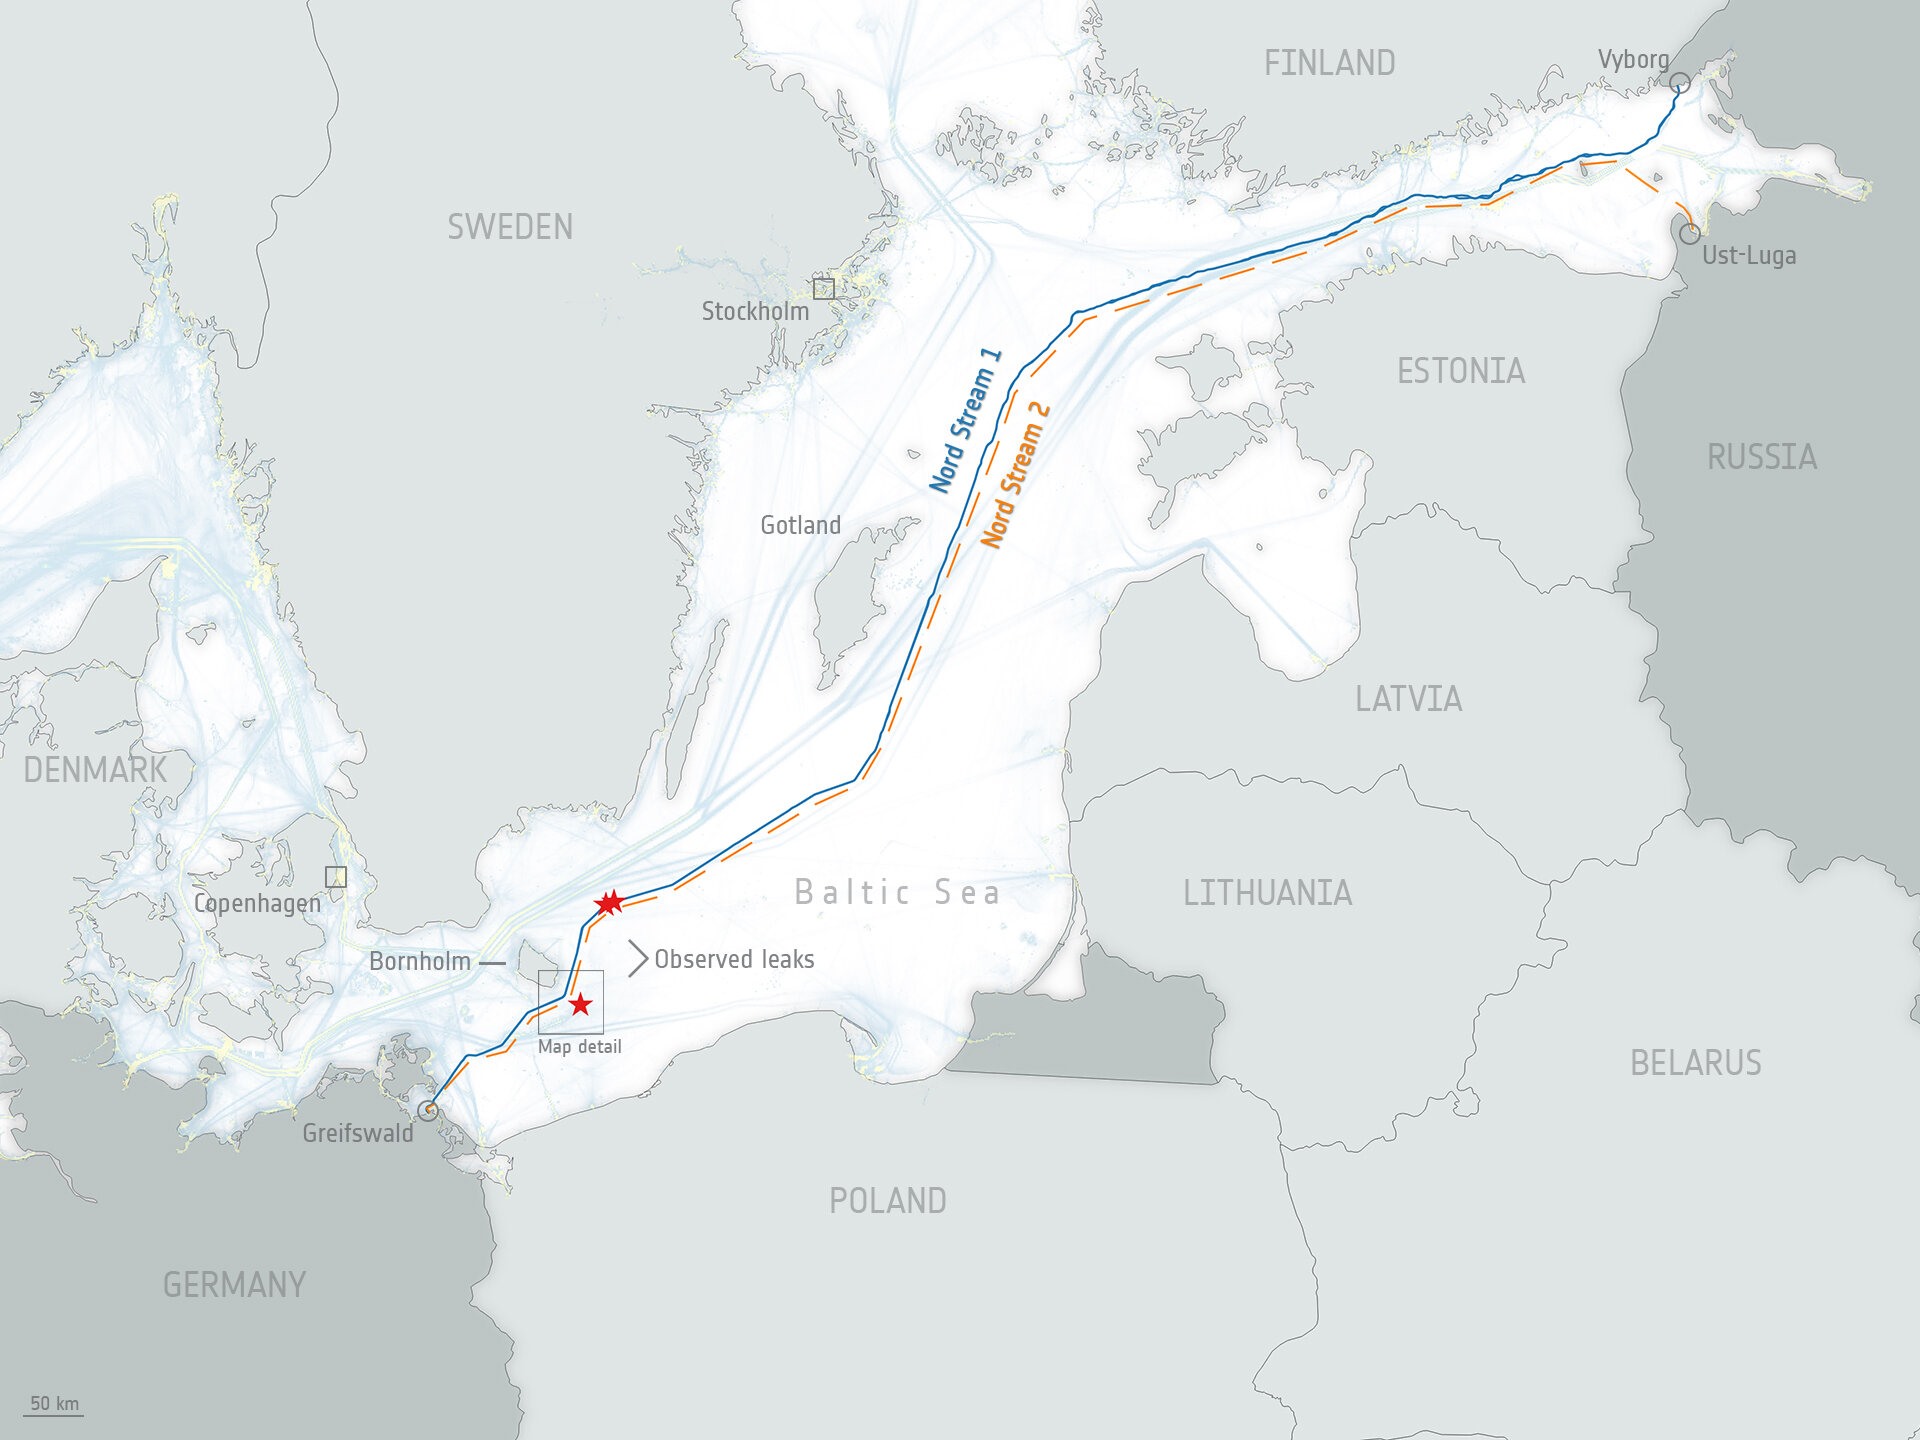 Bản đồ đường ống dẫn khí đốt Nord Stream 1 và 2 chạy dưới biển Baltic từ Nga đến Đức. Đường ống Nord Stream 1 chạy từ Vyborg ở tây bắc Nga, gần Phần Lan và đường ống Nord Stream 2 chạy từ Ust-Luga ở tây bắc Nga gần Estonia. Ảnh: Cơ quan Vũ trụ châu Âu